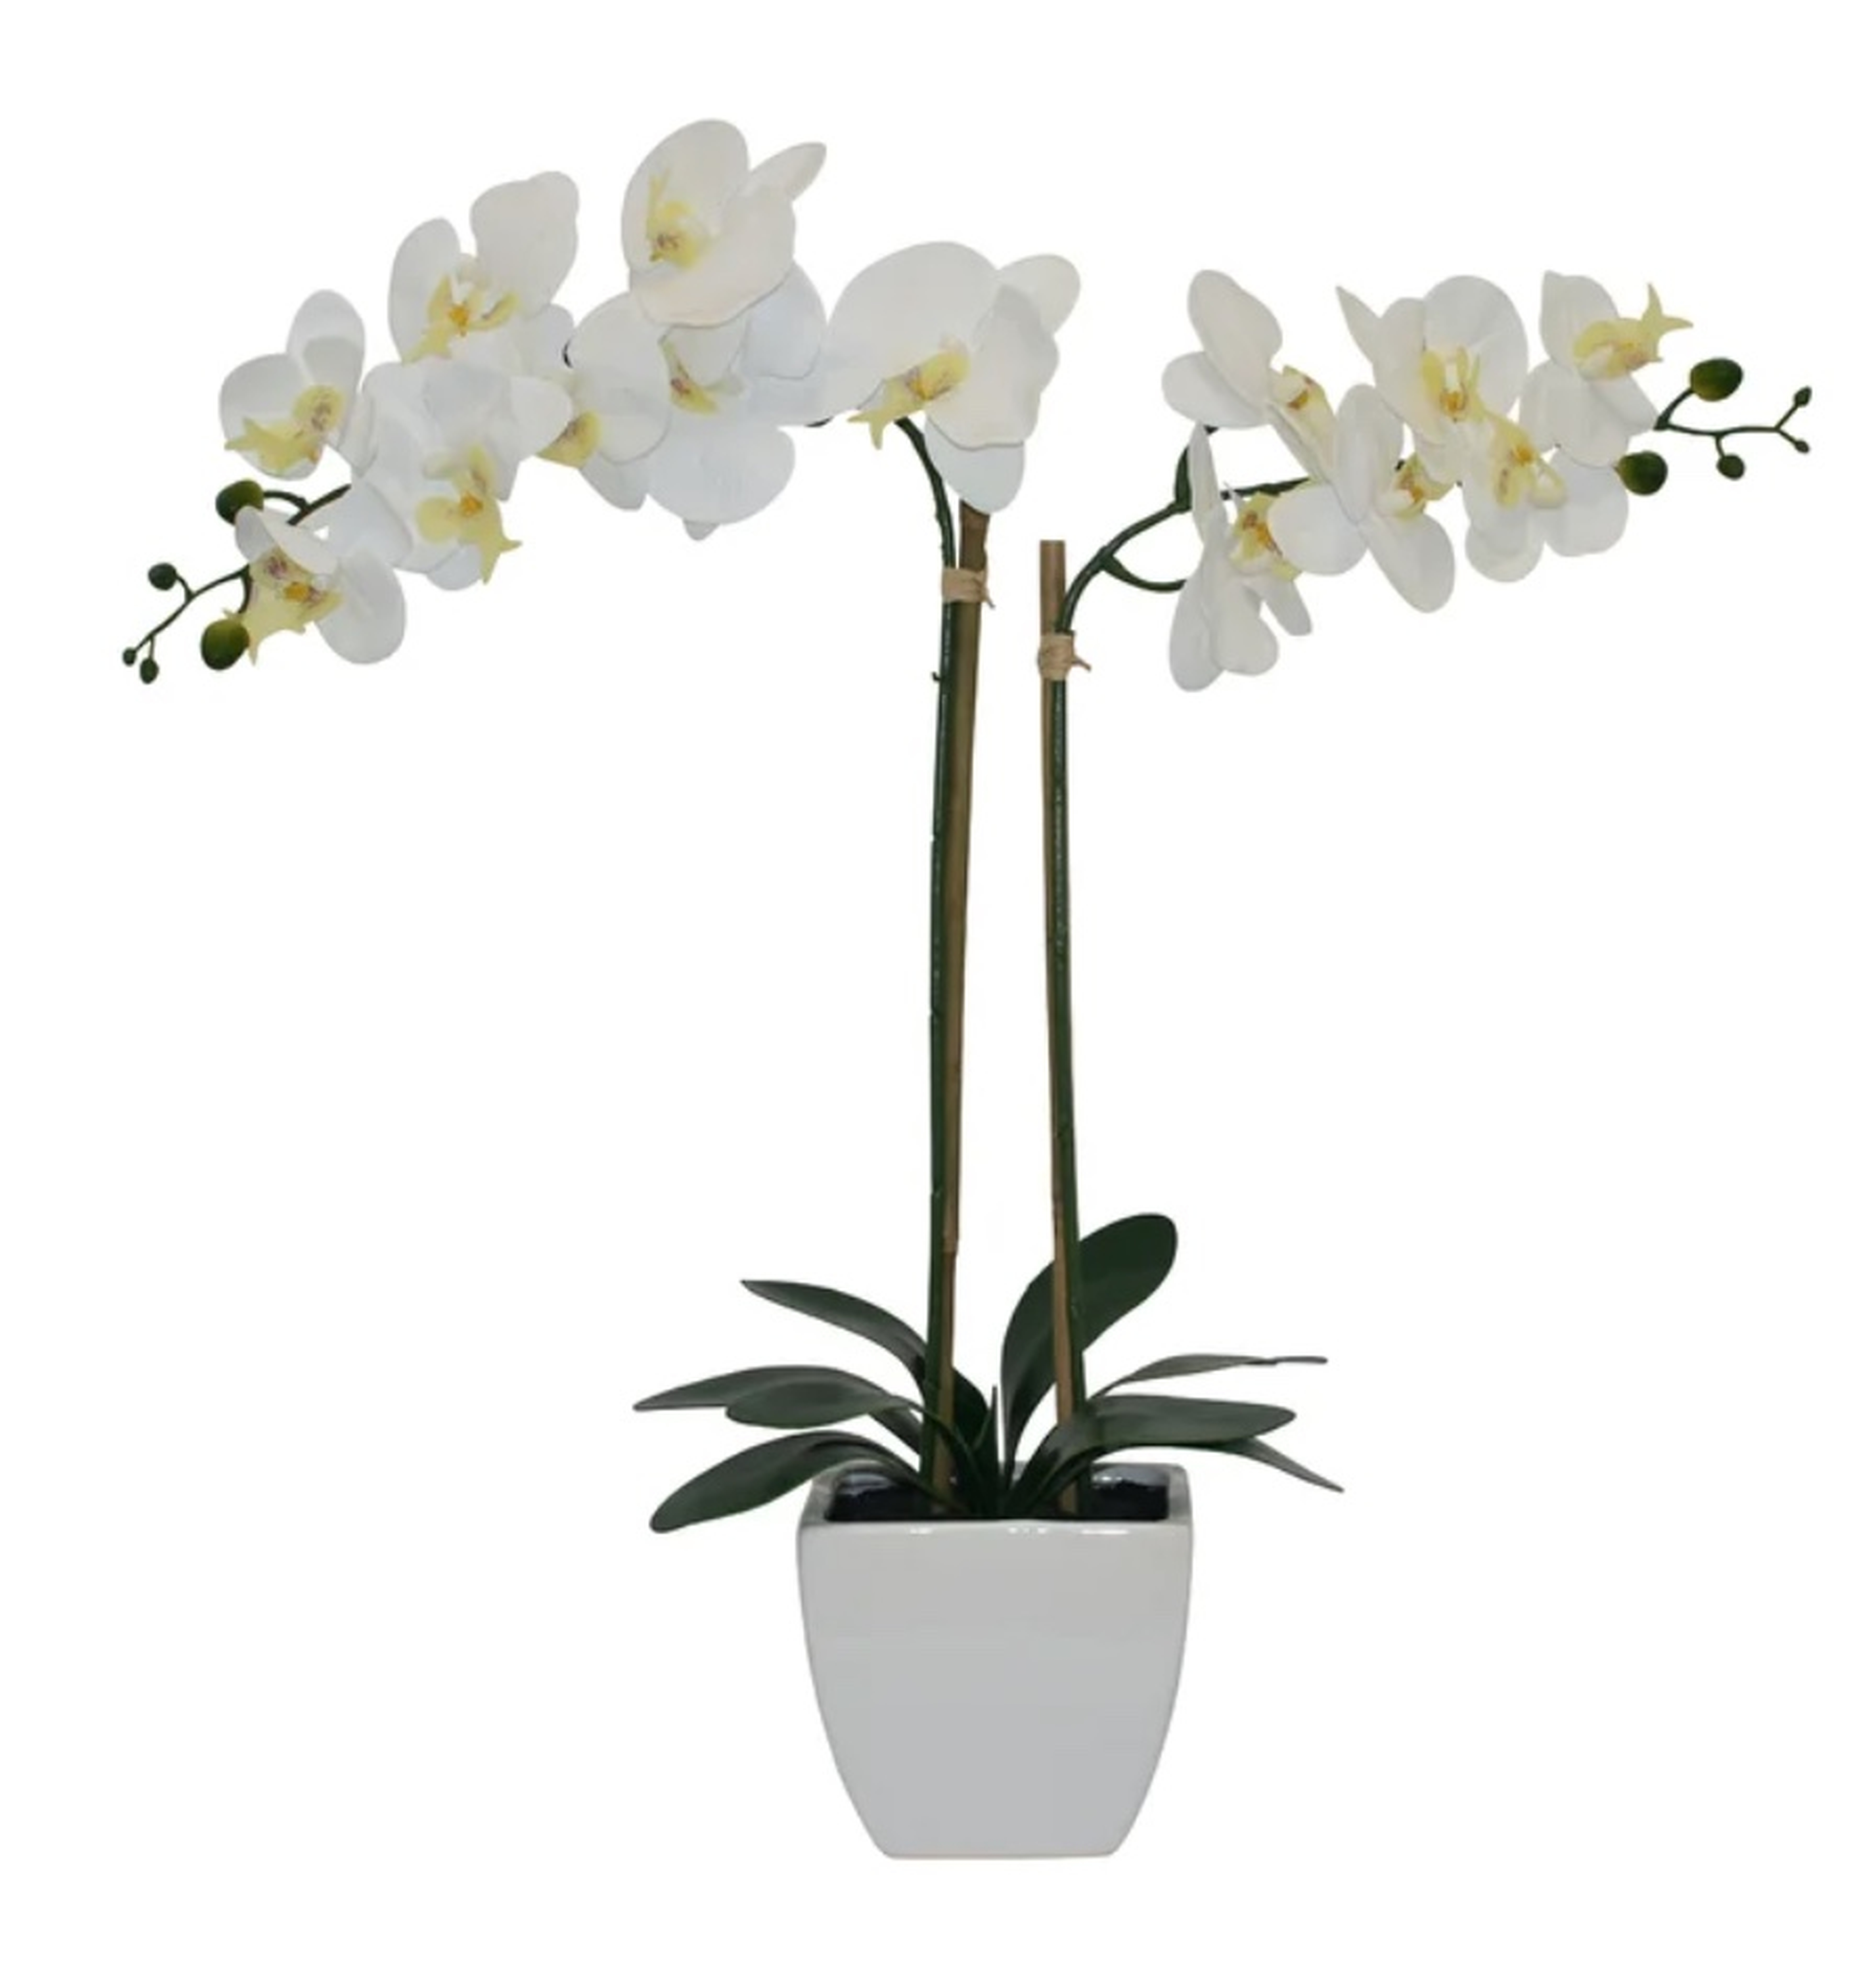 Orchids Floral Arrangements in Pot - Wayfair